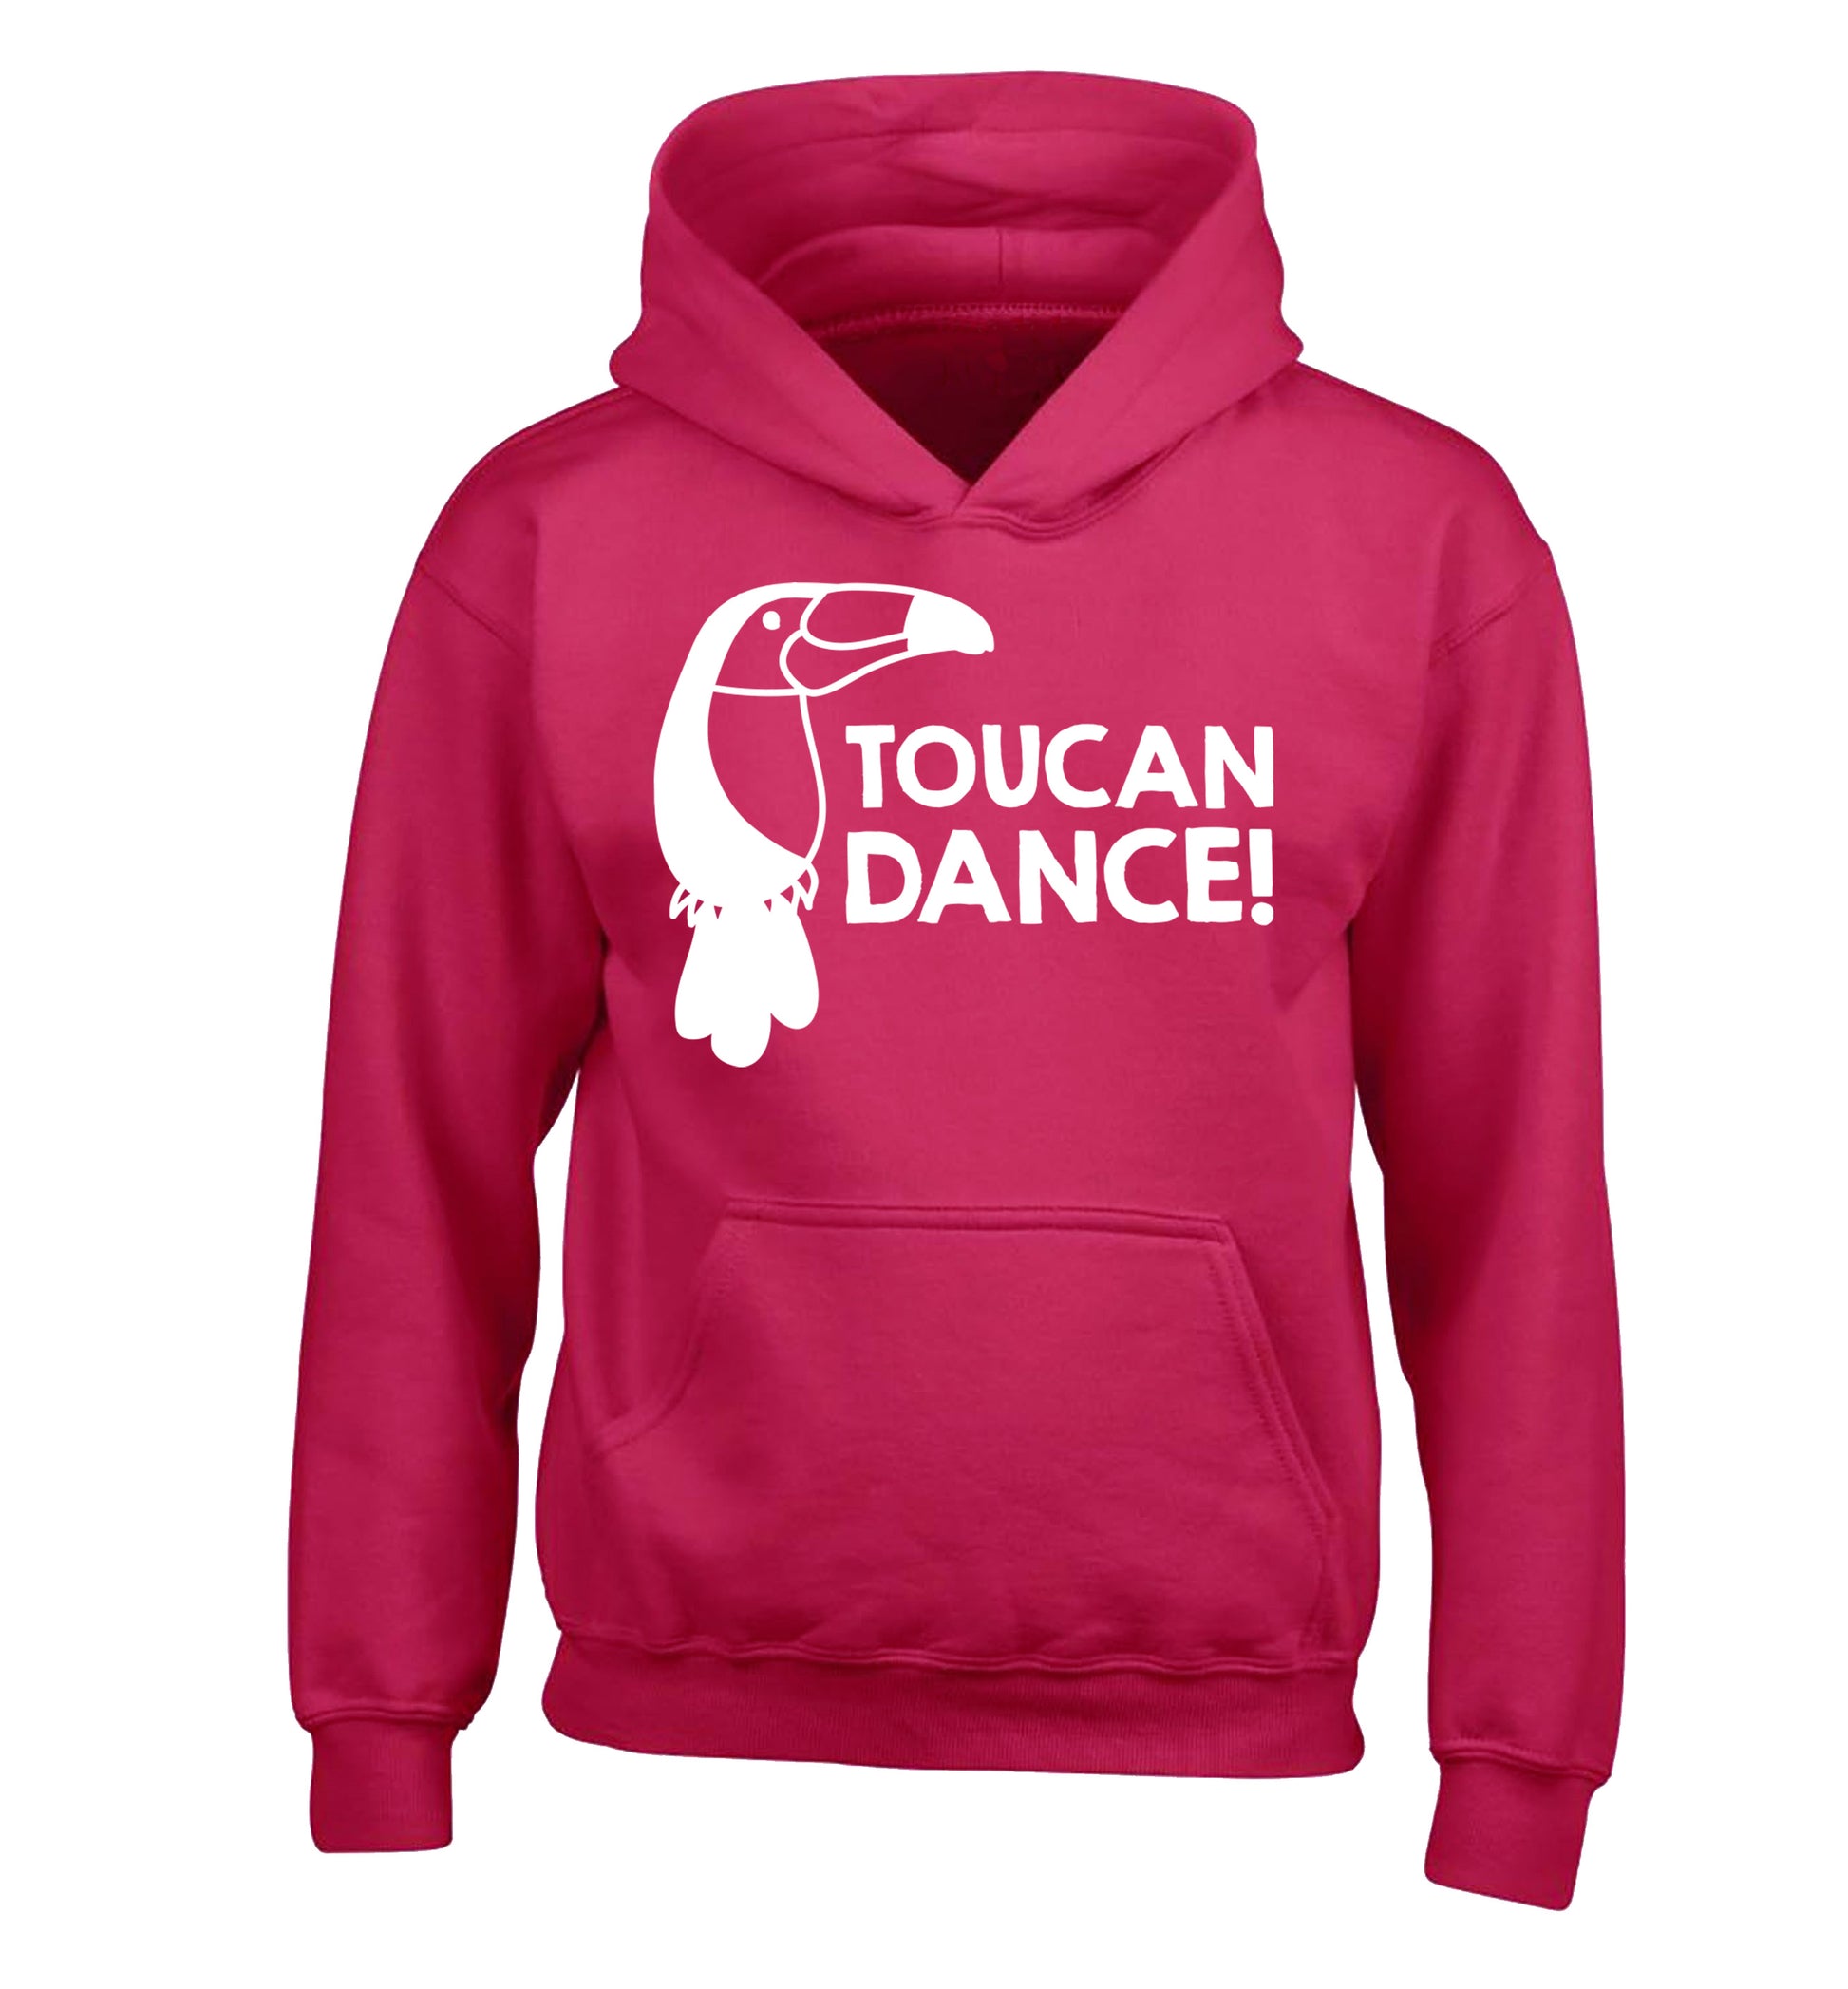 Toucan dance children's pink hoodie 12-13 Years